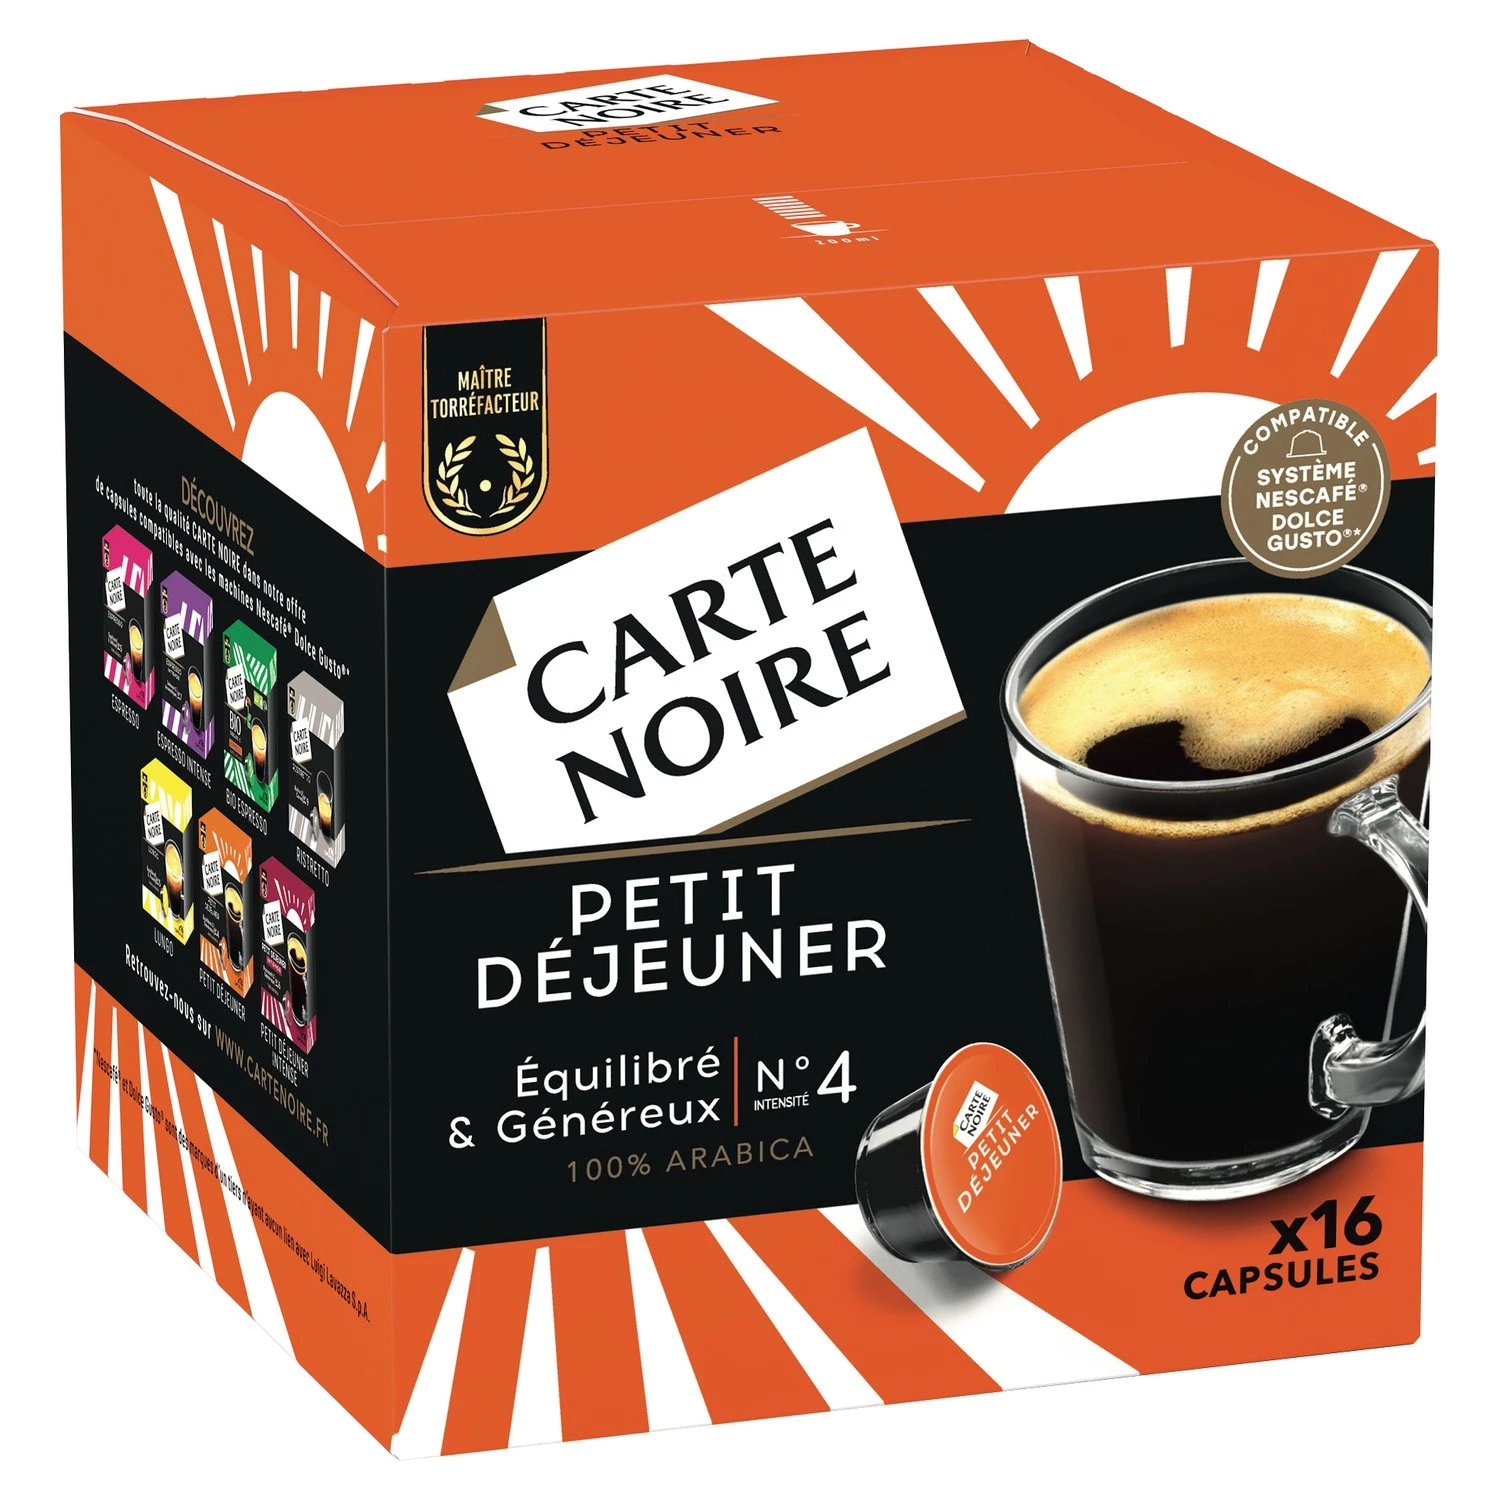 Breakfast coffee n°4 x16 capsules 128g - CARTE NOIRE